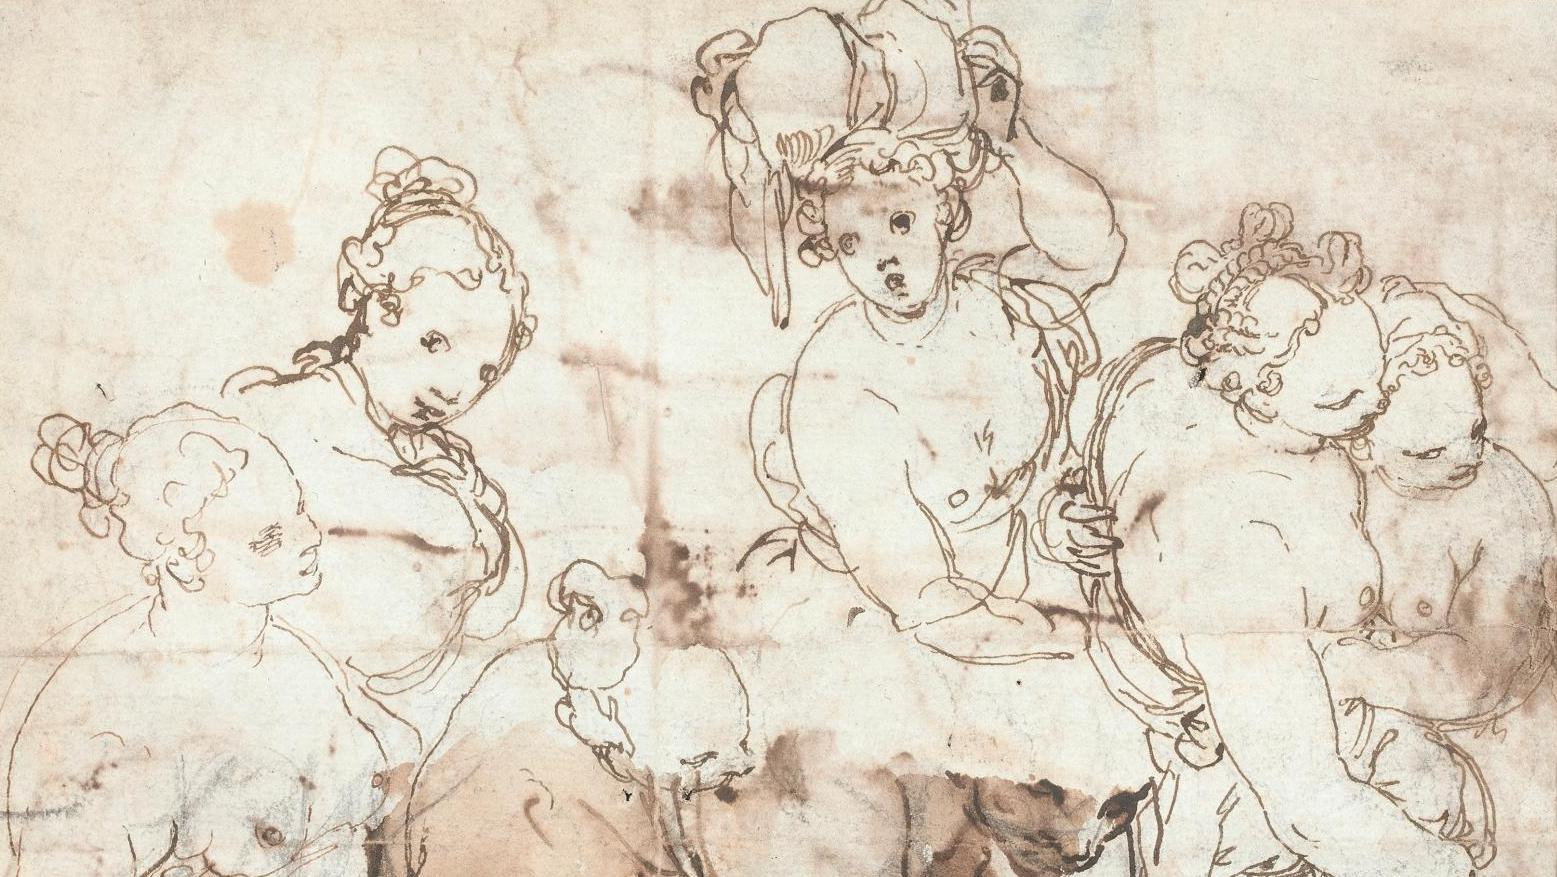 Taddeo Zuccaro (1529-1566), Sept études de femmes, au verso une esquisse de paysage... Taddeo Zuccaro, révélation maniériste